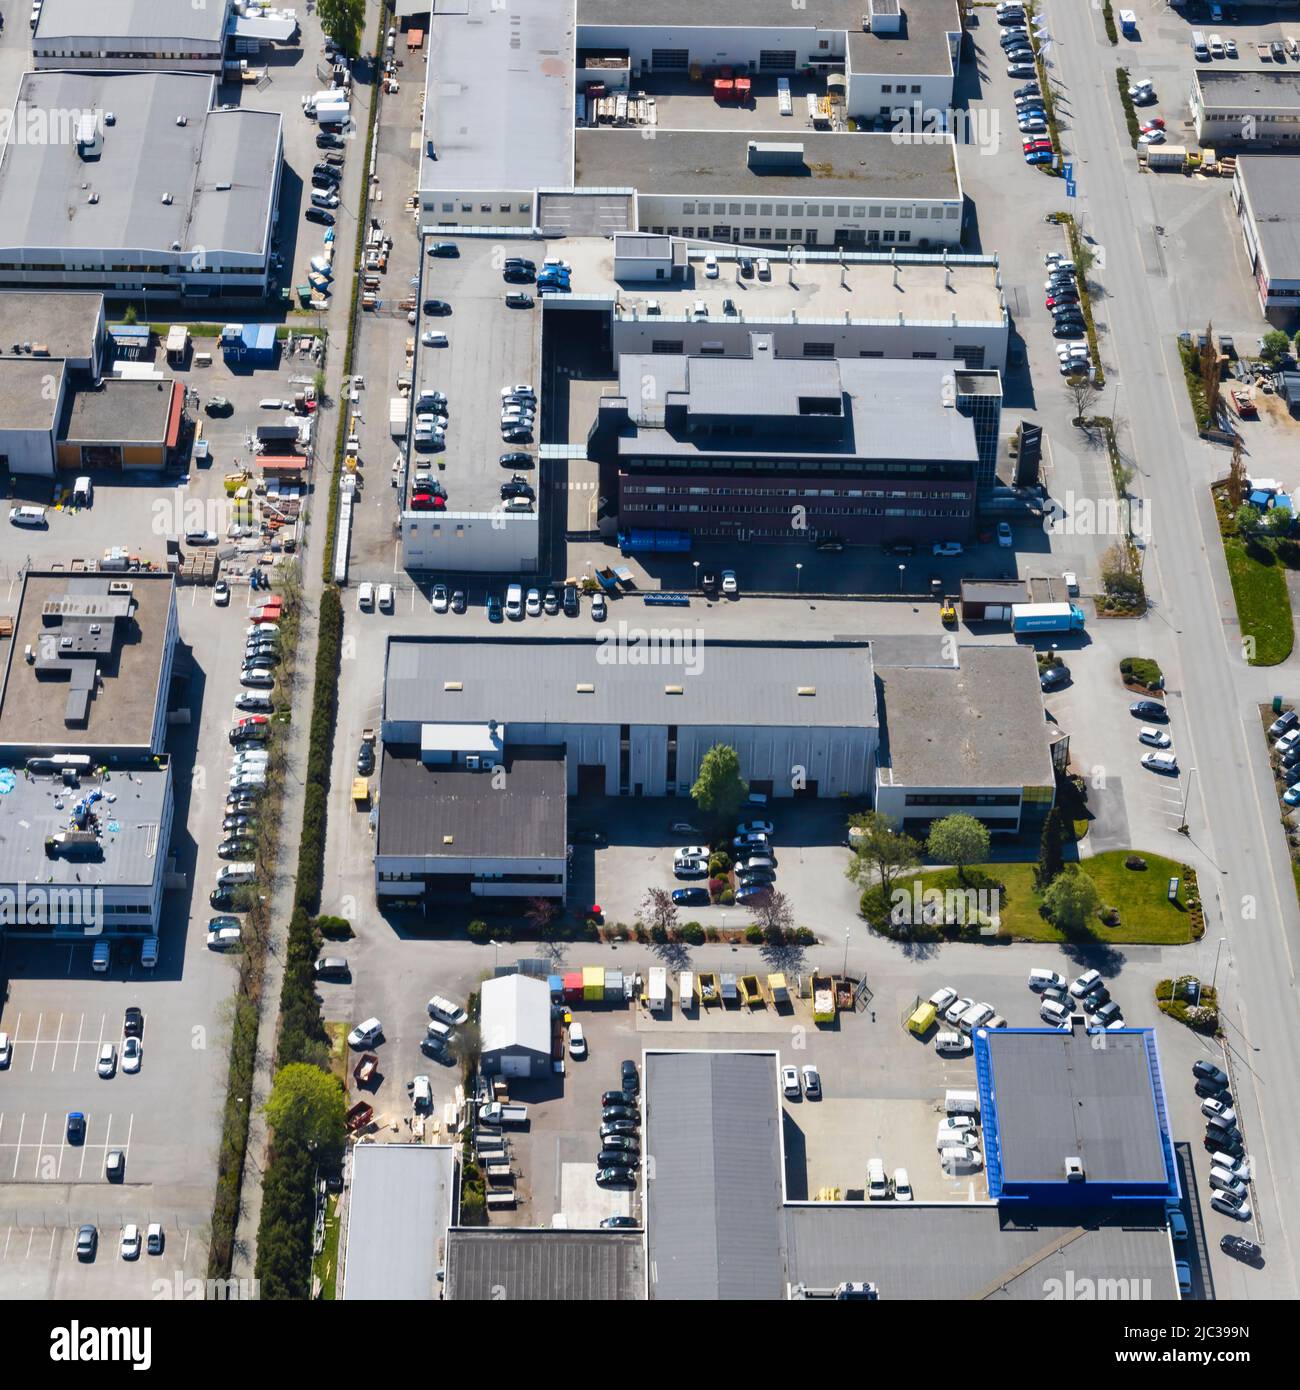 Grand parc industriel commercial. De dessus, vue aérienne. Stavanger, Norvège Banque D'Images